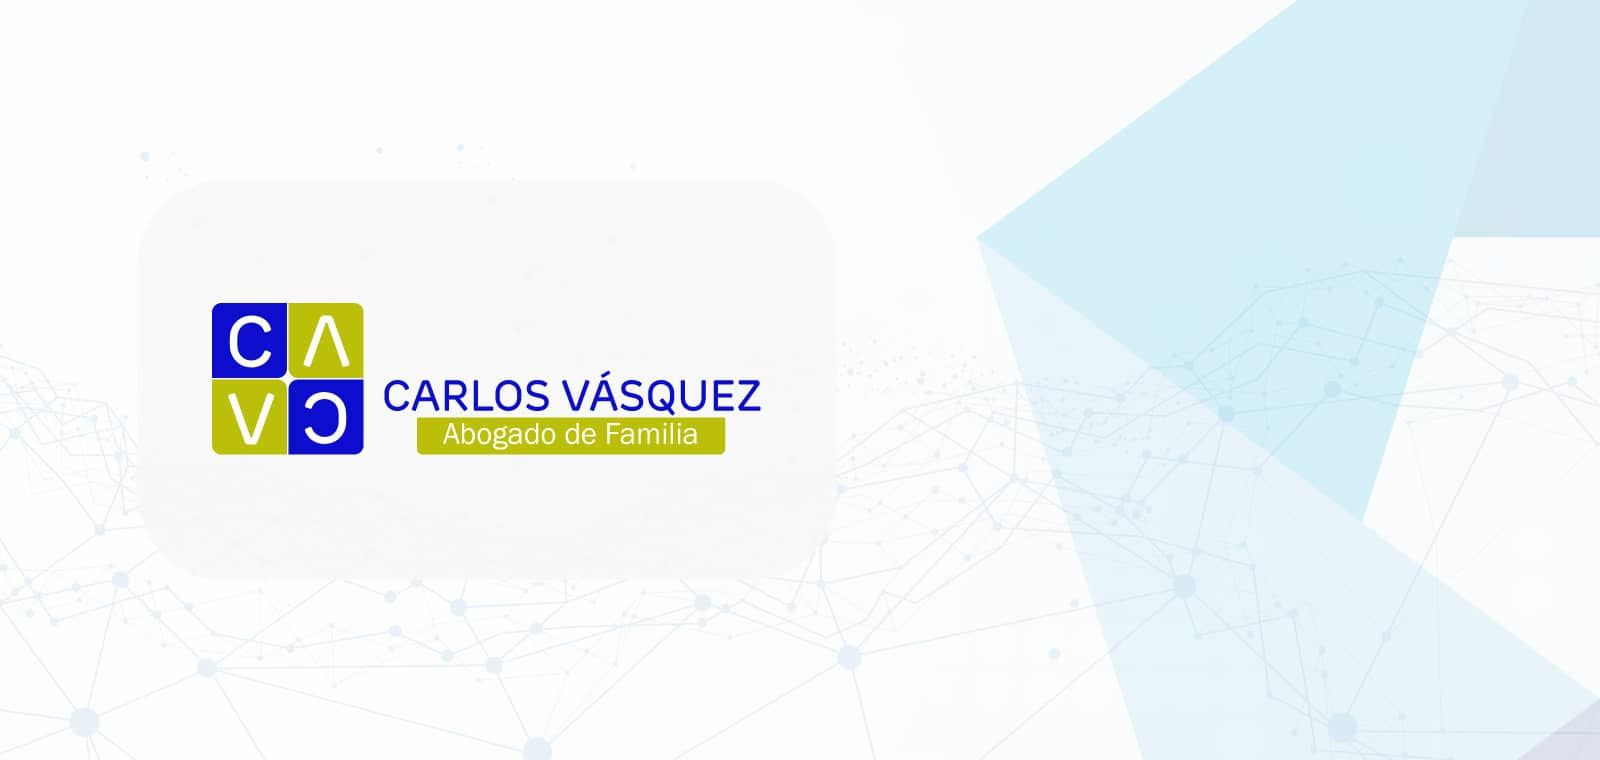 Carlos Alberto Vázquez - Abogado de Familia: caso de éxito en Science & Marketing